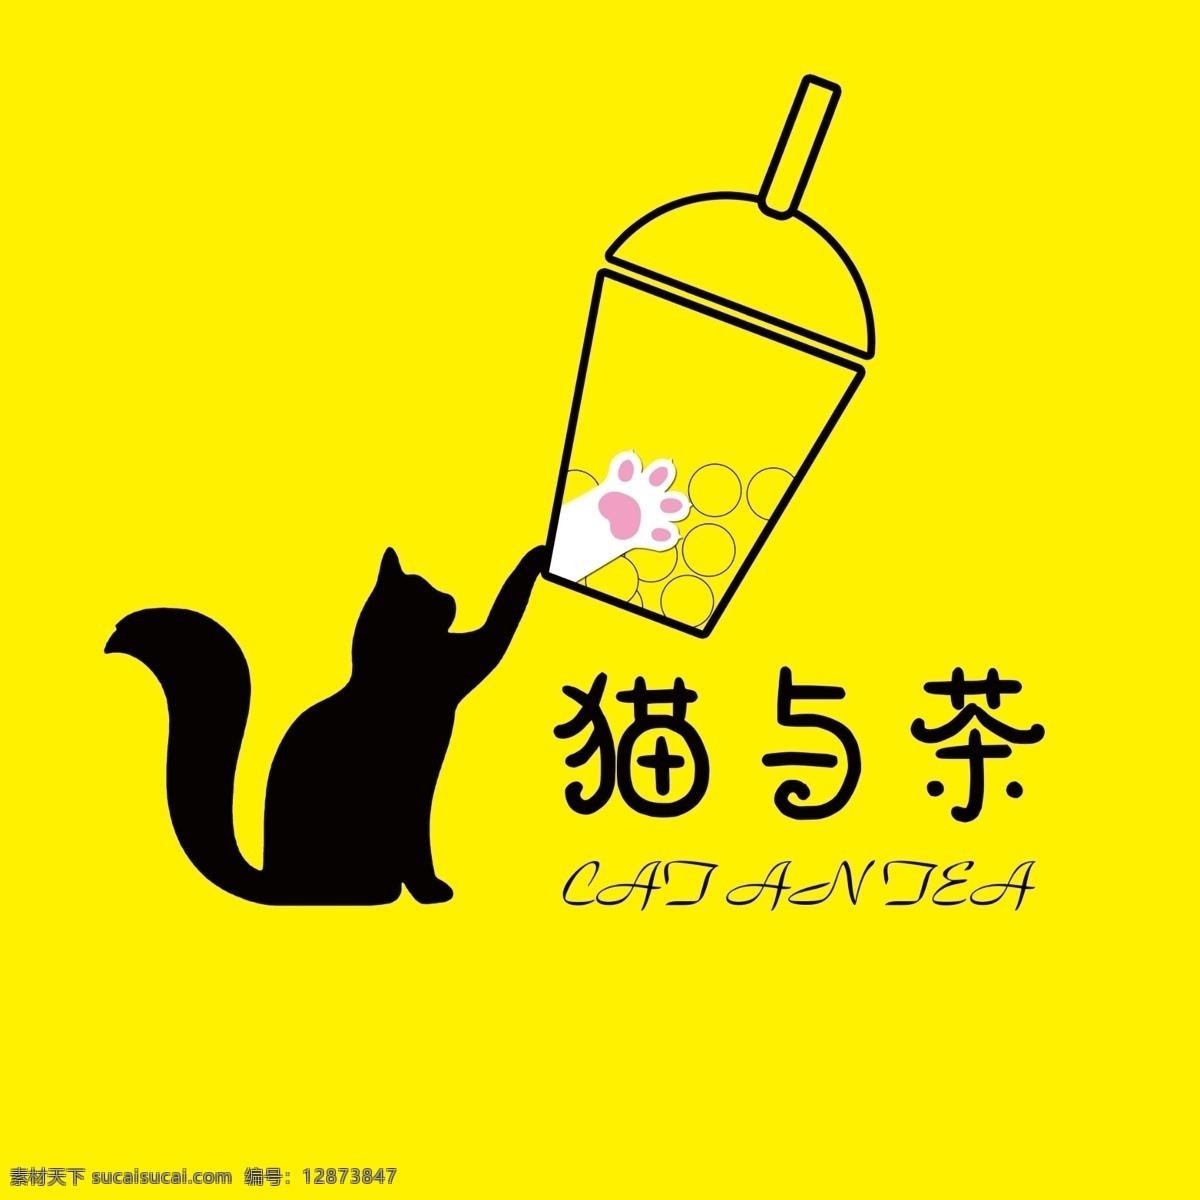 猫与茶图片 猫 奶茶 茶杯 猫爪 珍珠奶茶 标志图标 其他图标